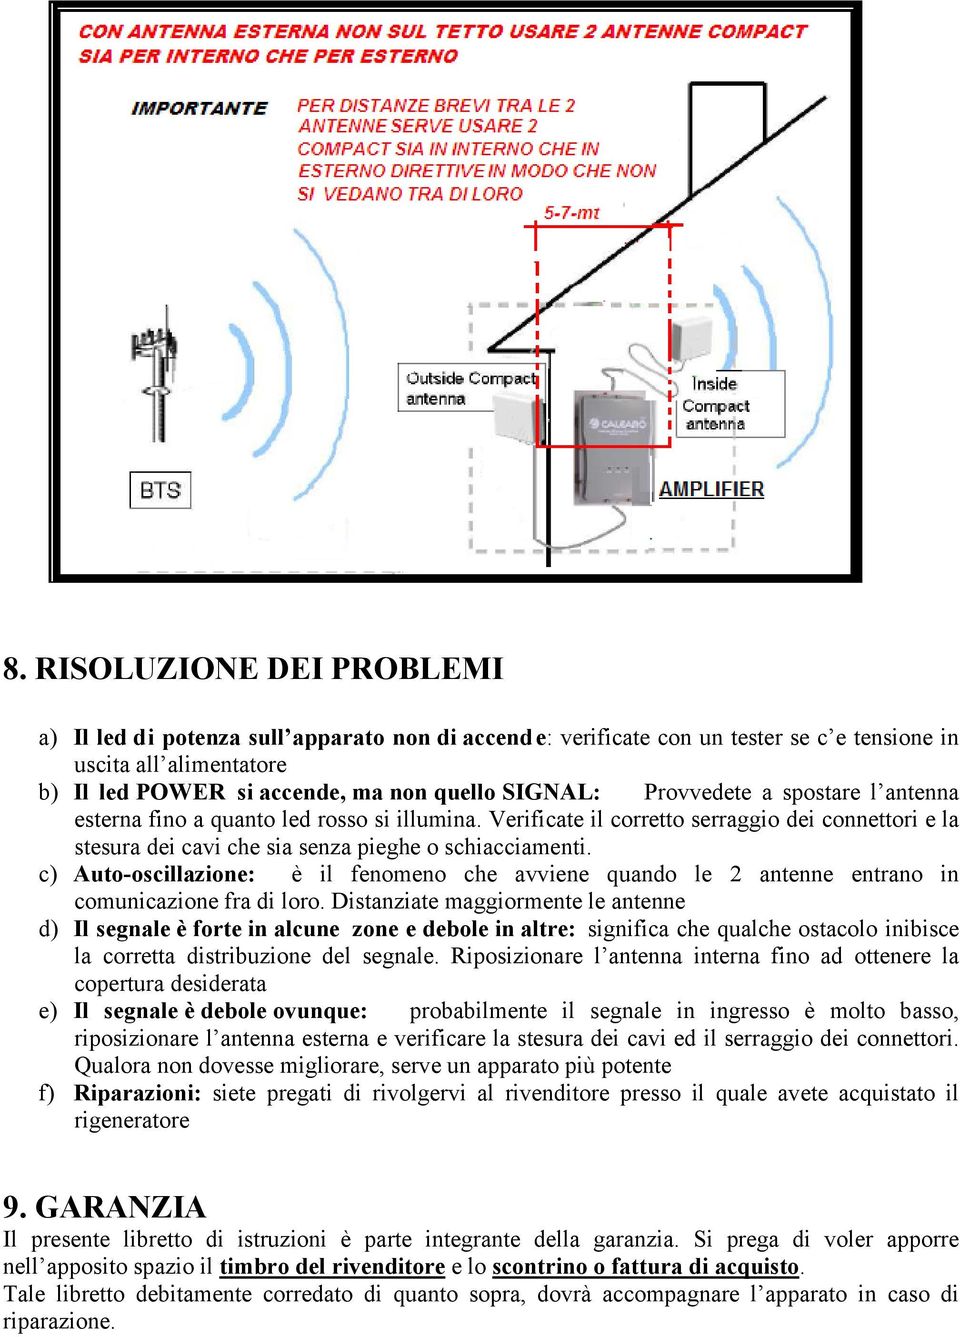 c) Auto-oscillazione: è il fenomeno che avviene quando le 2 antenne entrano in comunicazione fra di loro.